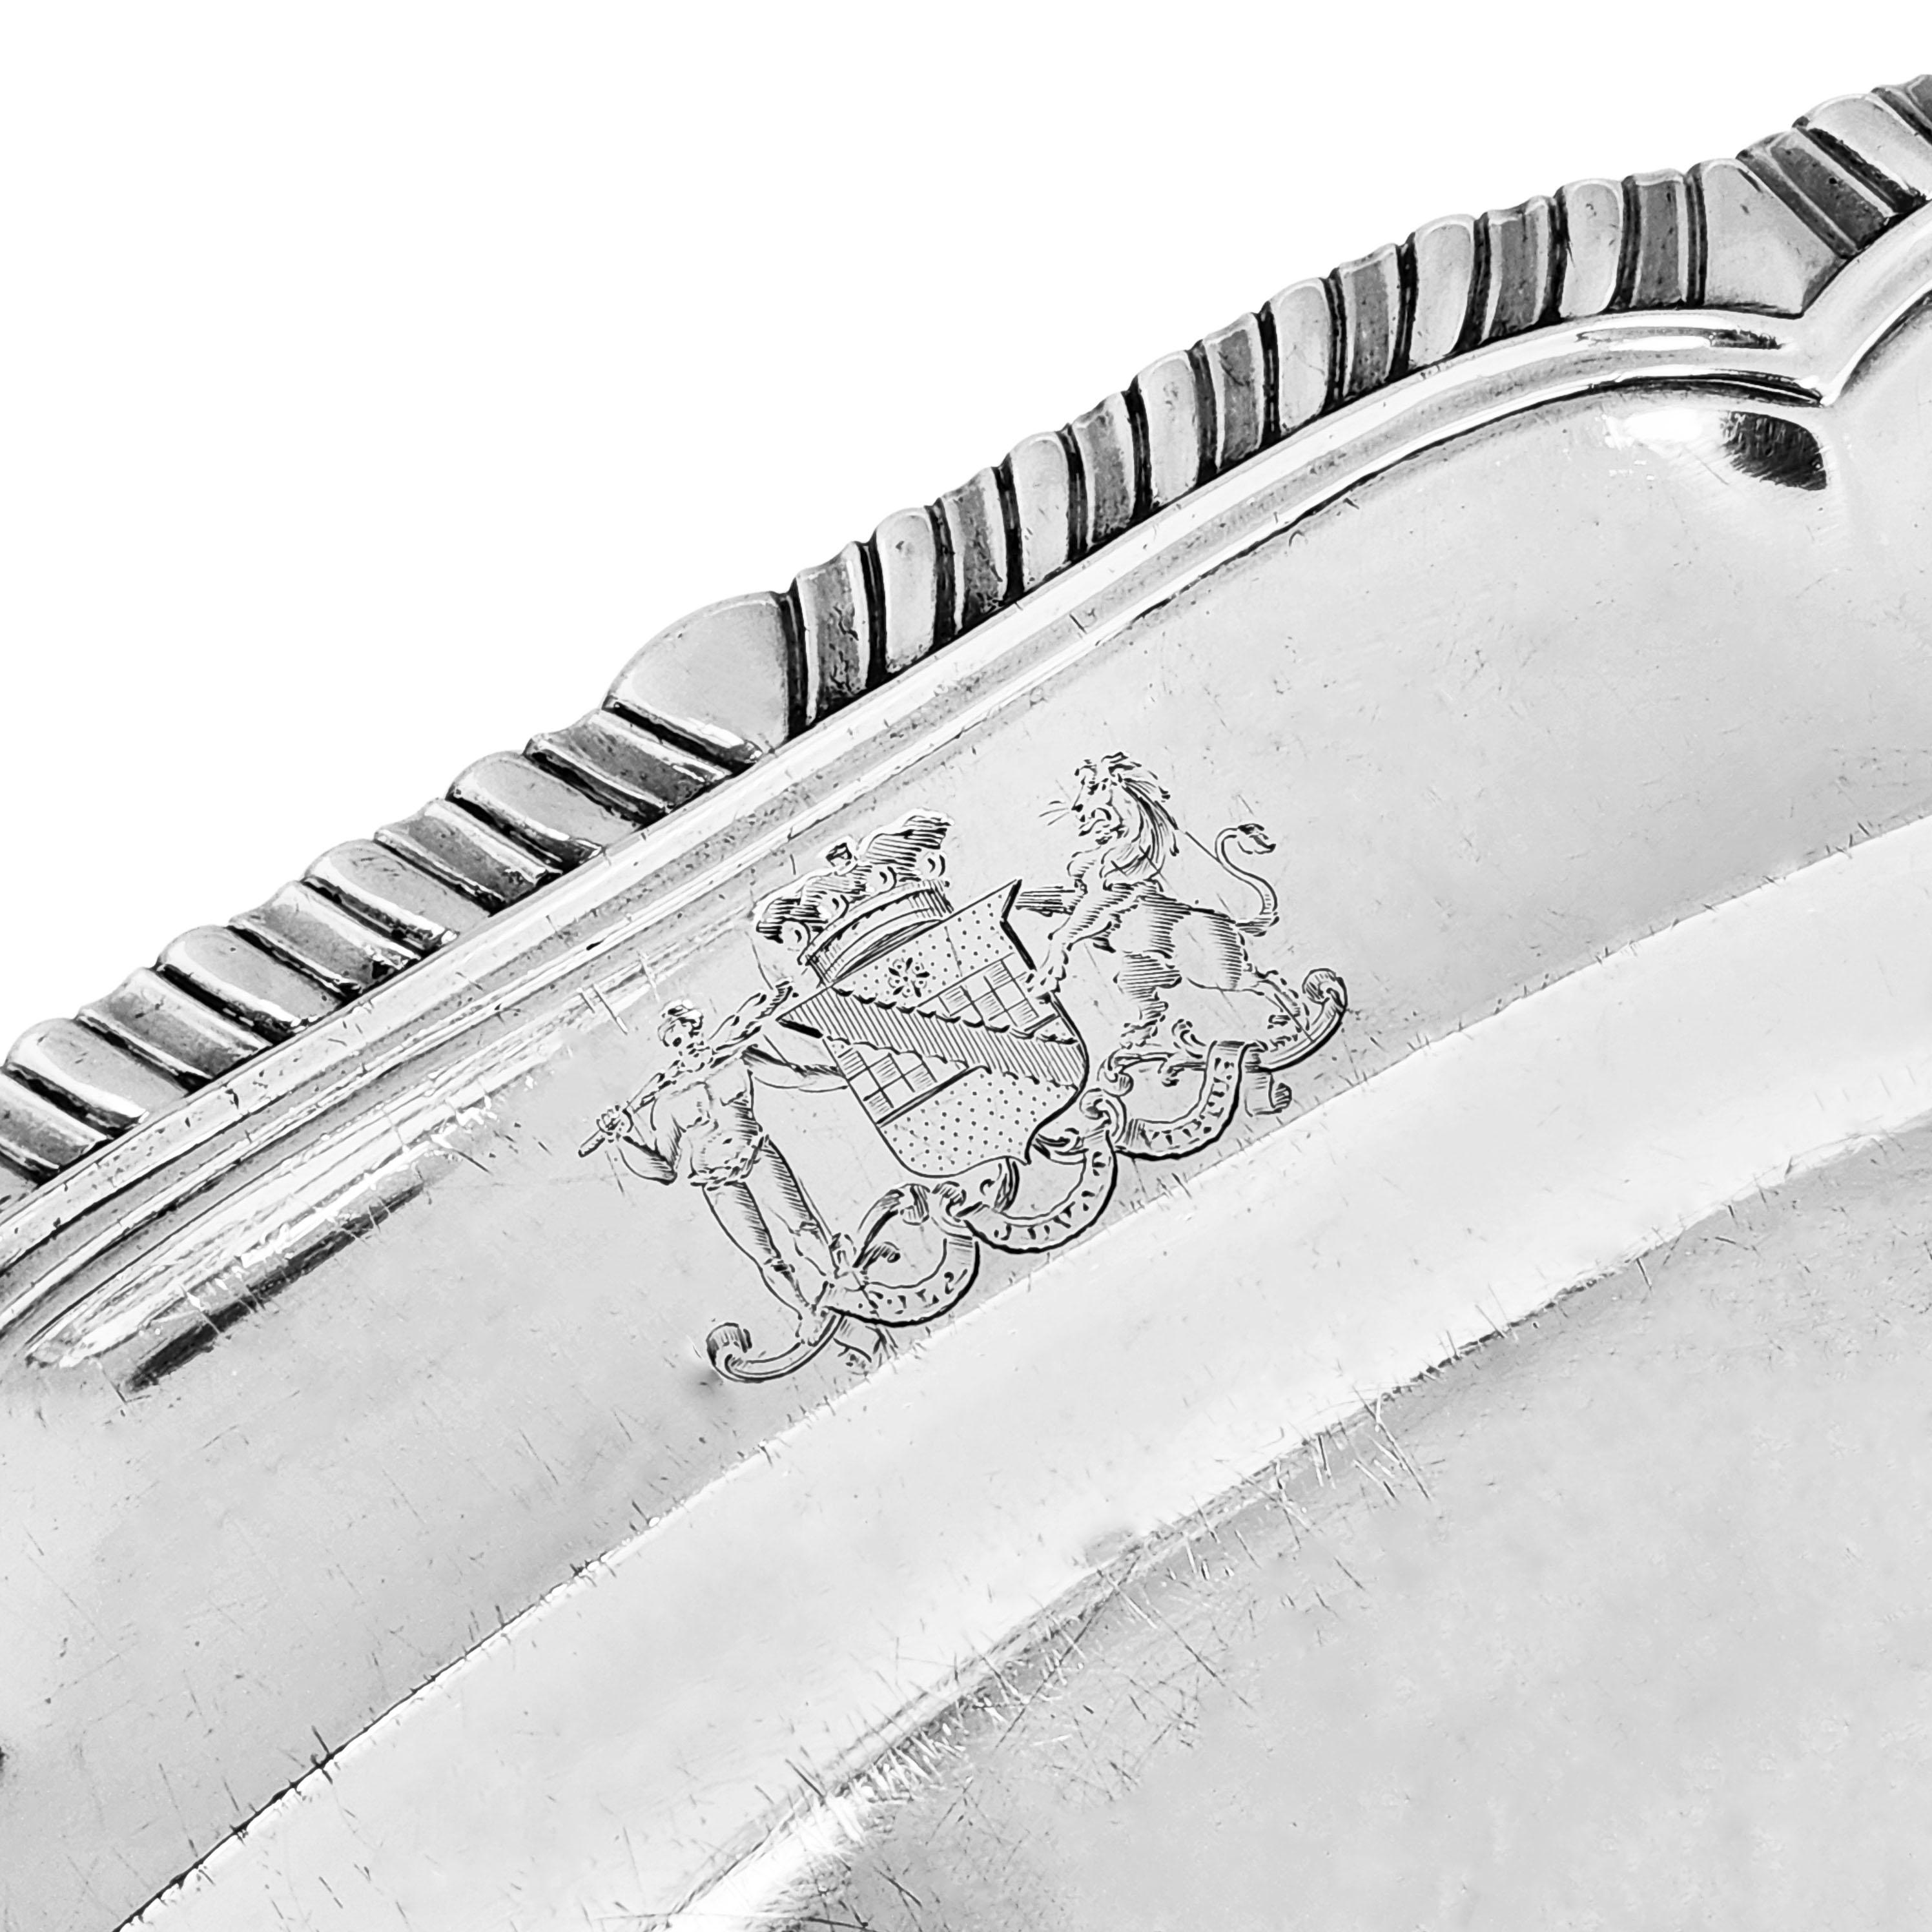 Un plat de service ovale de forme classique de George III avec une bordure traditionnelle à motif de godrons.

Fabriqué à Londres, en Angleterre, en 1806 par Burwash & Sibley

Approx. Poids - 1418g / 45.59oz
Approx. Longueur - 42,3 cm
Approx.